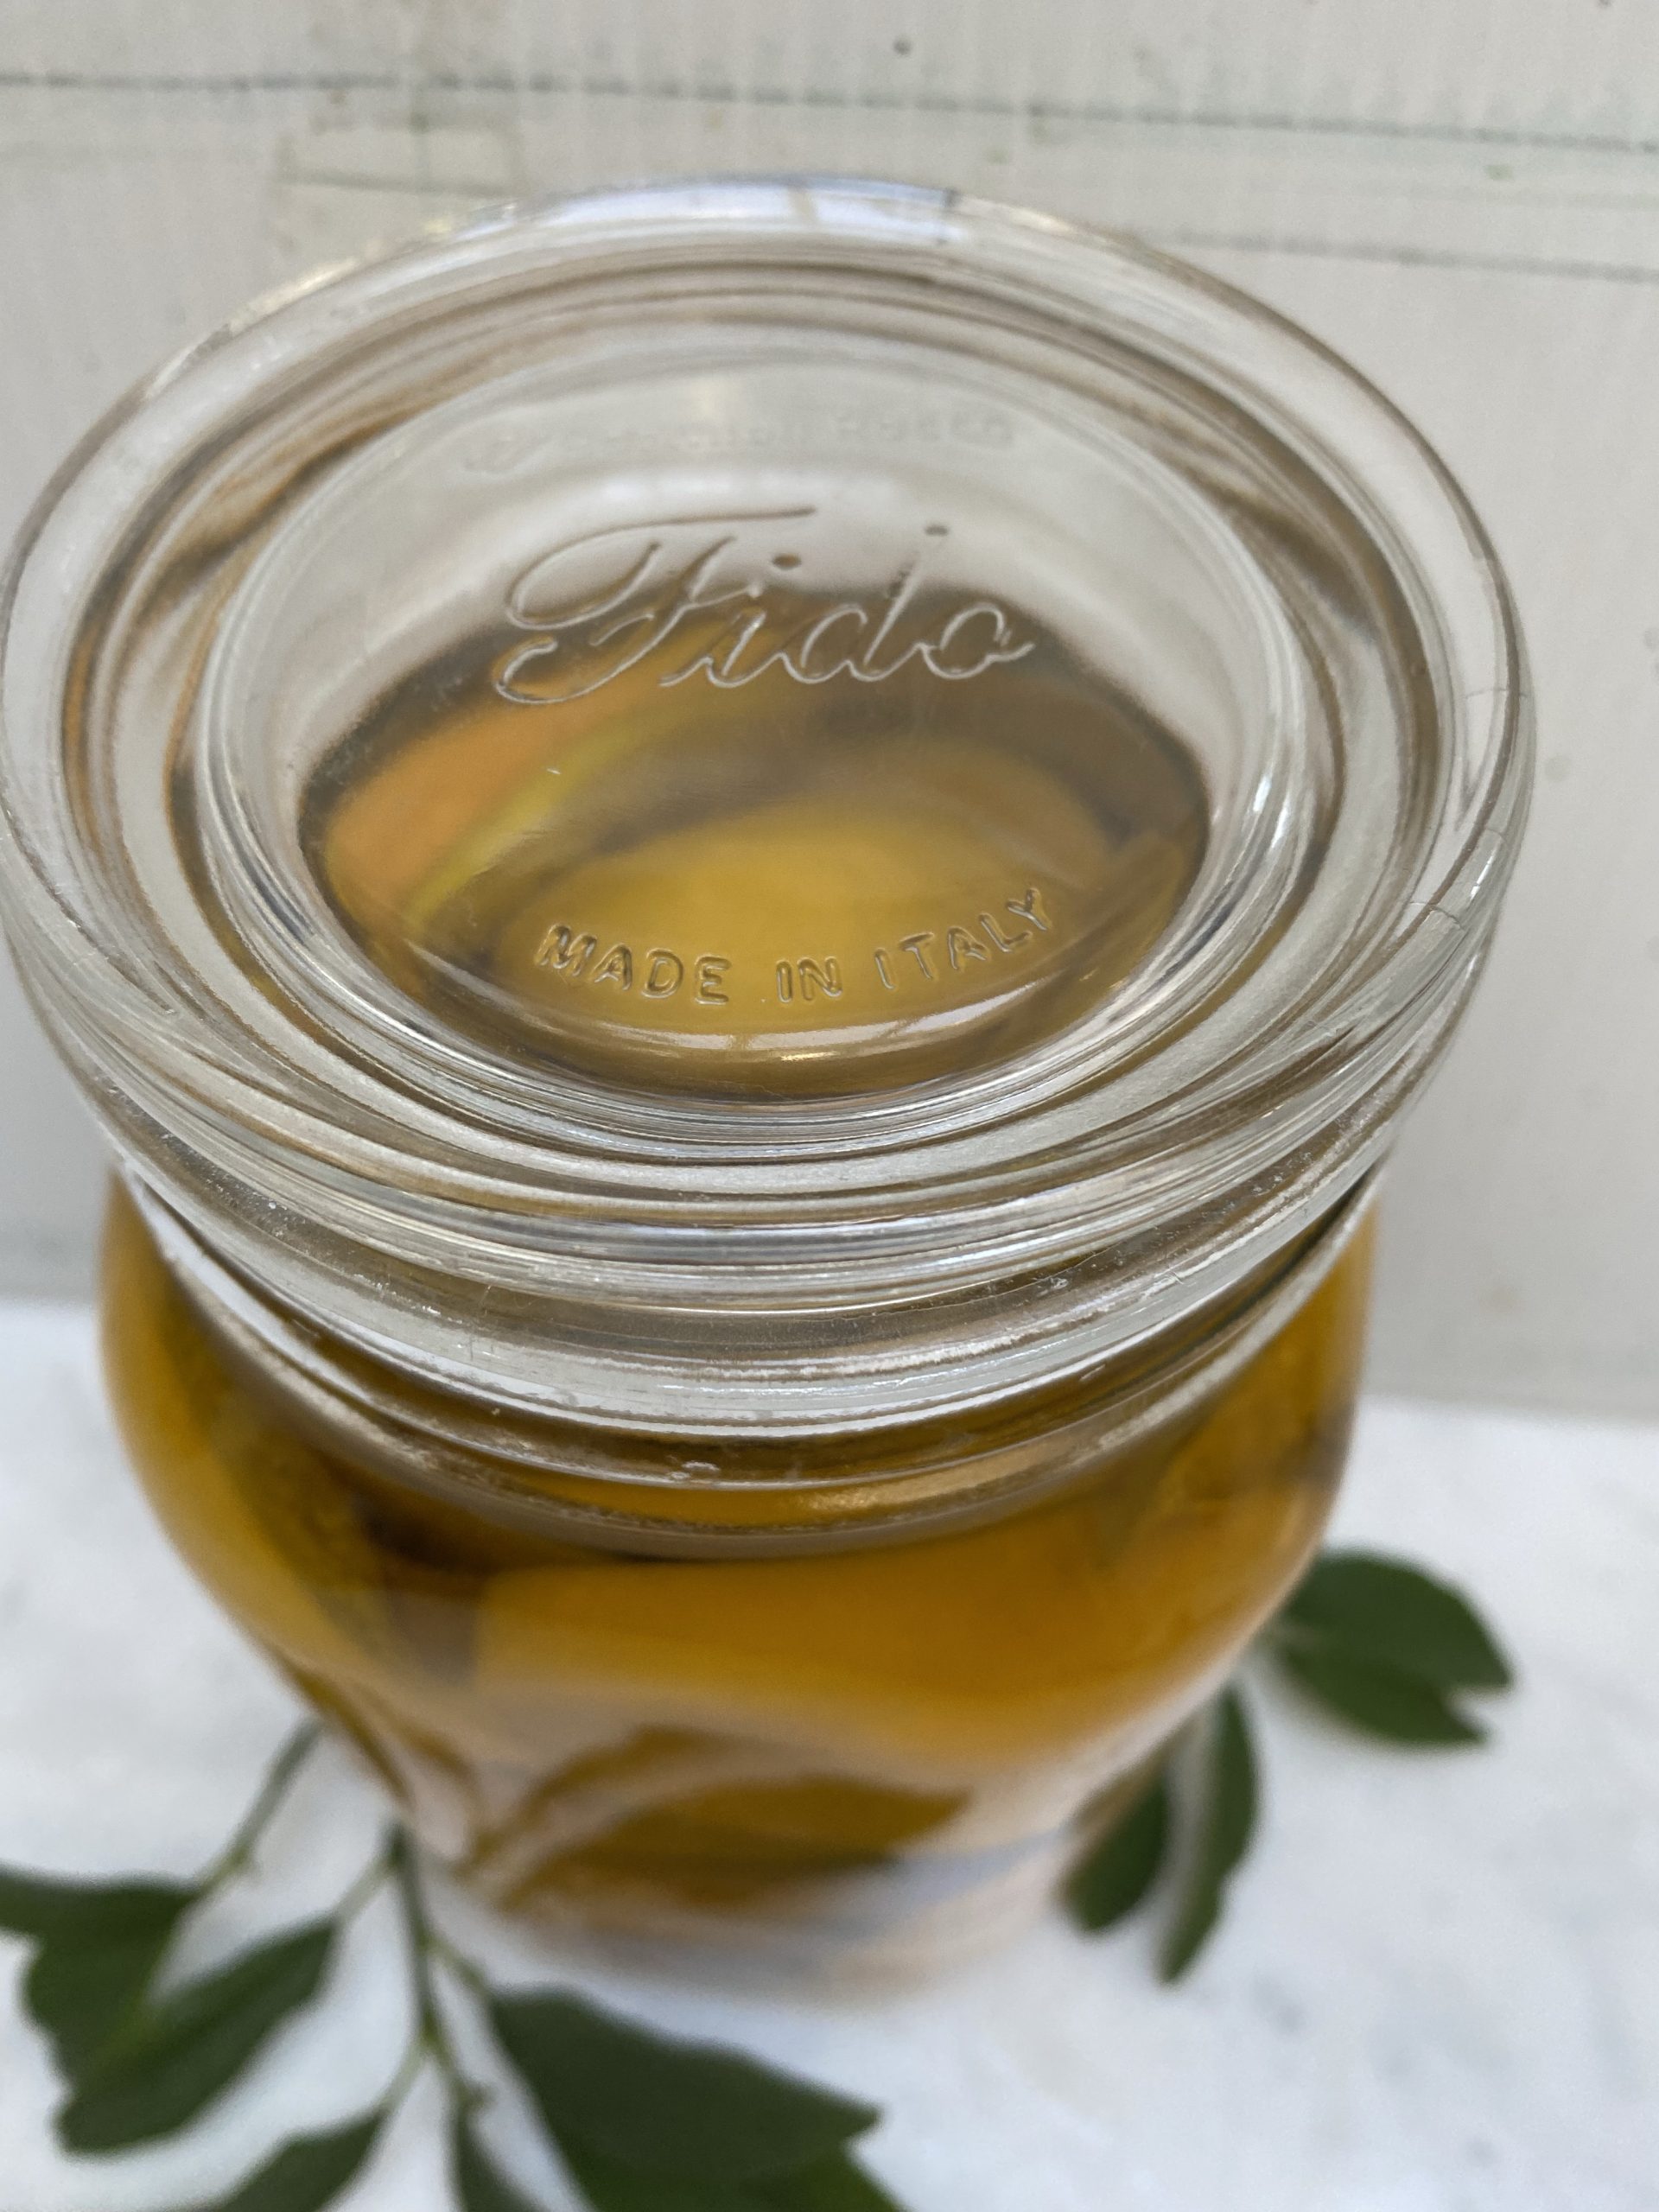 preserved lemon recipe, lemons, organic lemons, lemon quarters, fido jars, fido canning jars, olive oil